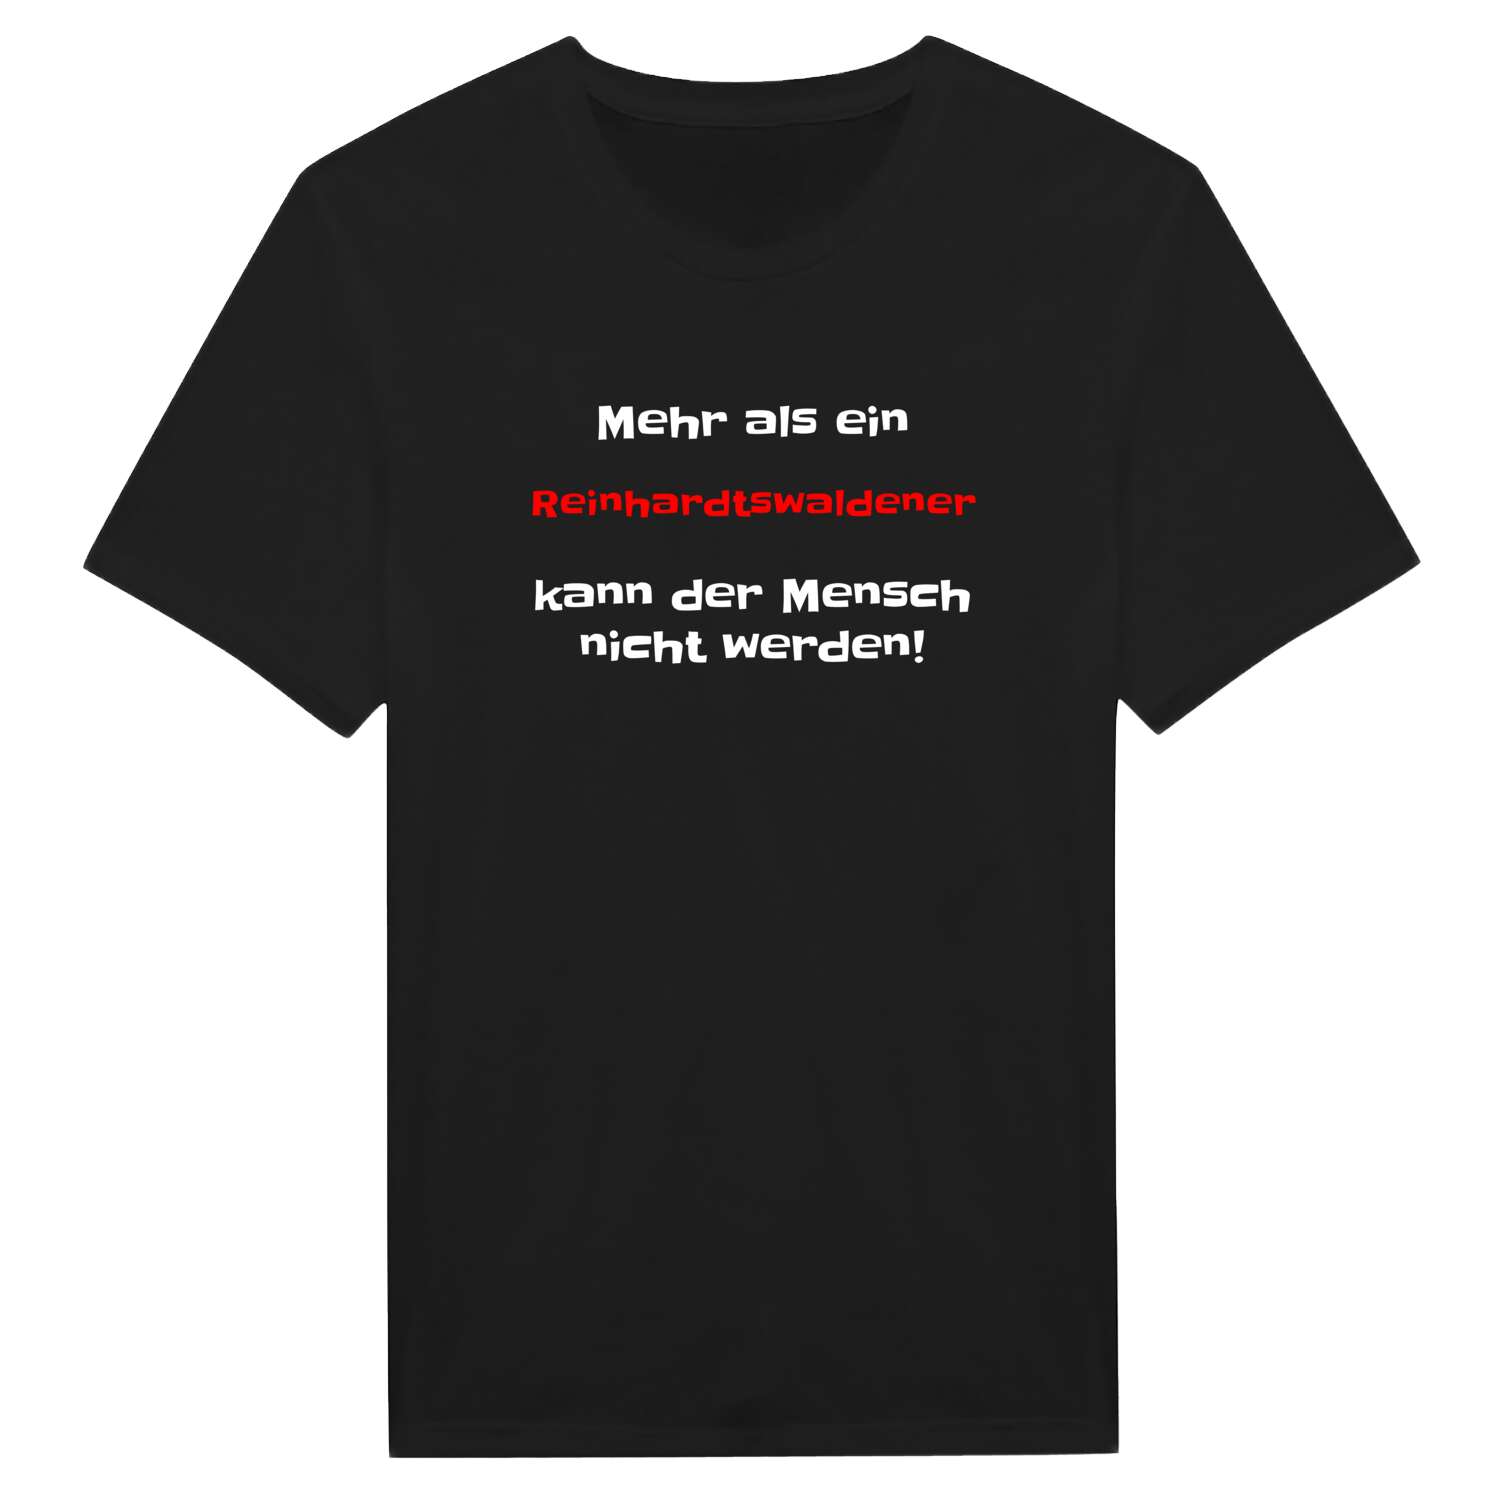 Reinhardtswalde T-Shirt »Mehr als ein«